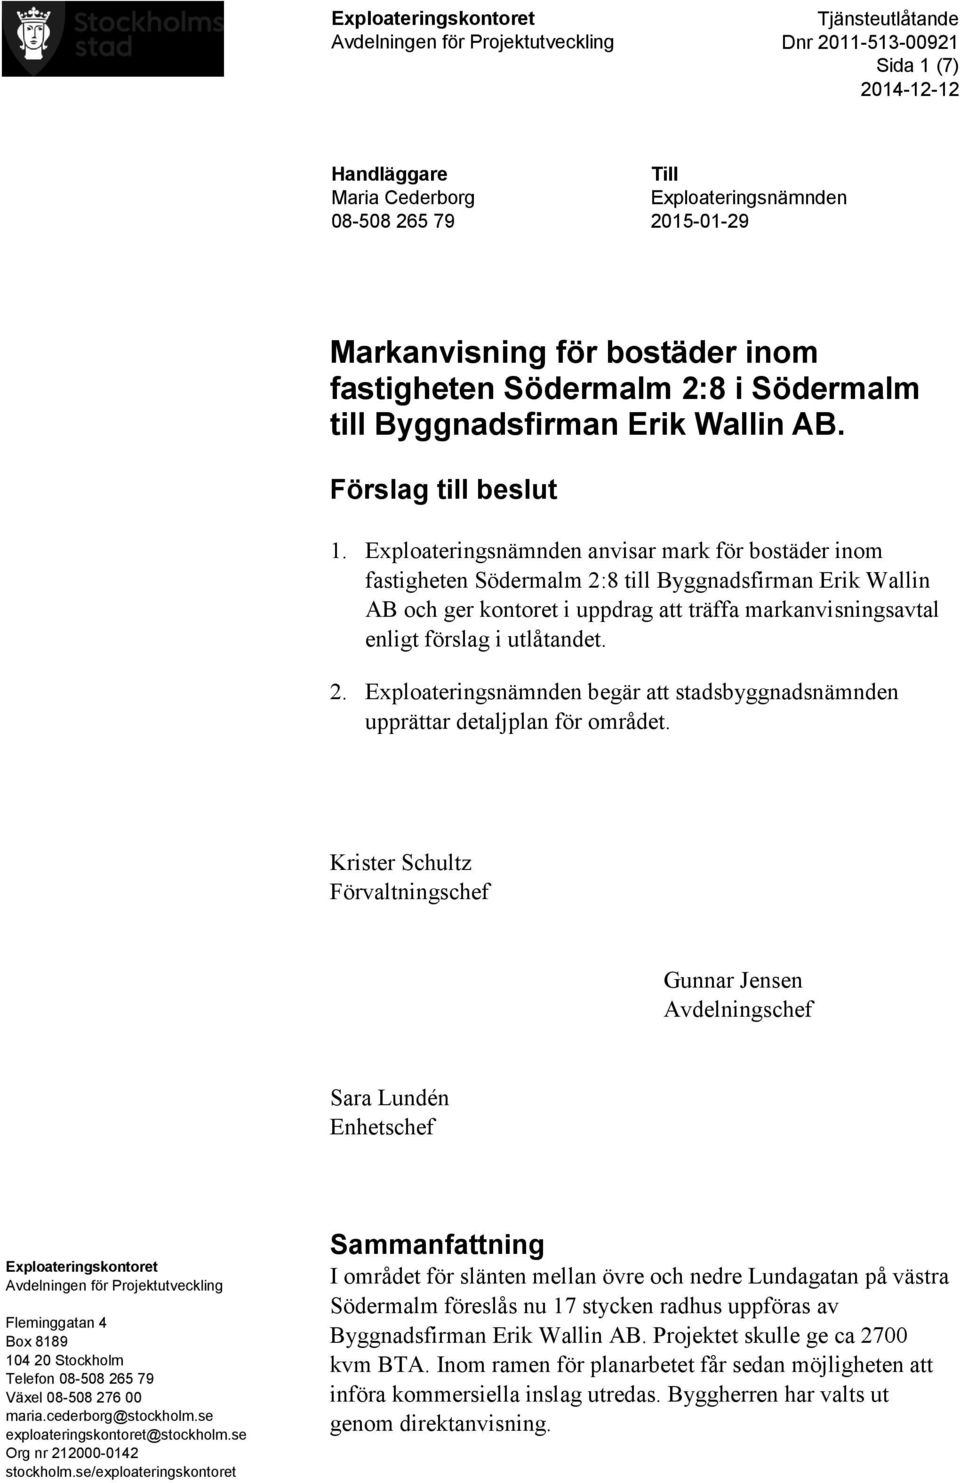 Exploateringsnämnden anvisar mark för bostäder inom fastigheten Södermalm 2:8 till Byggnadsfirman Erik Wallin AB och ger kontoret i uppdrag att träffa markanvisningsavtal enligt förslag i utlåtandet.